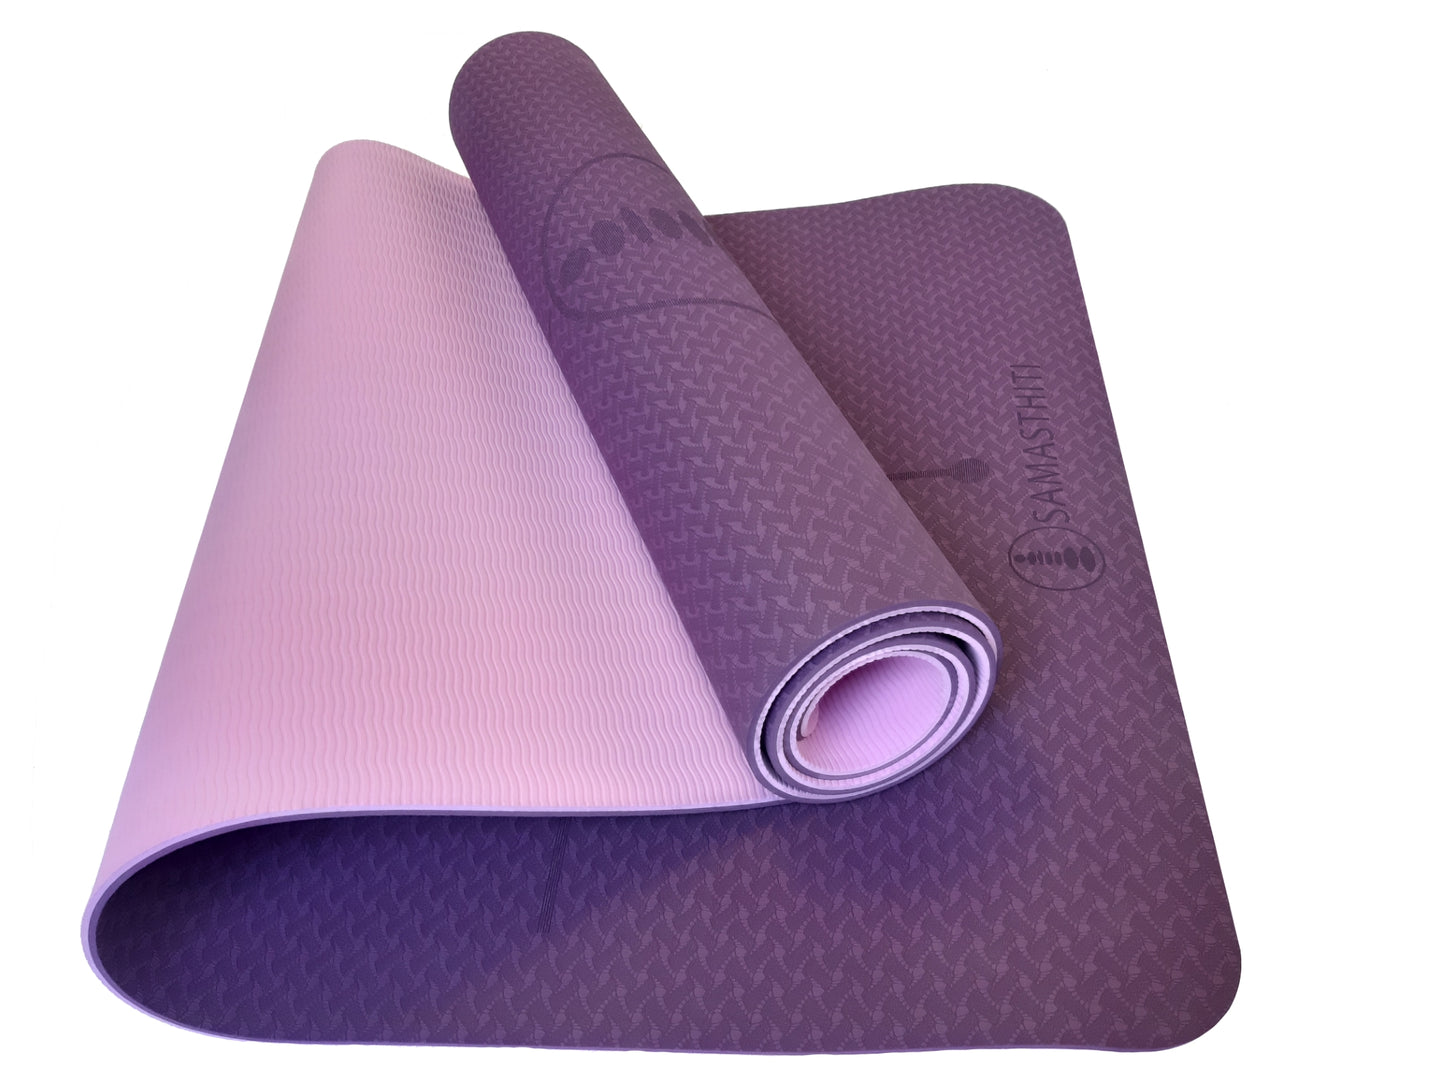 Samasthiti Eco-friendly TPE Yoga Mat